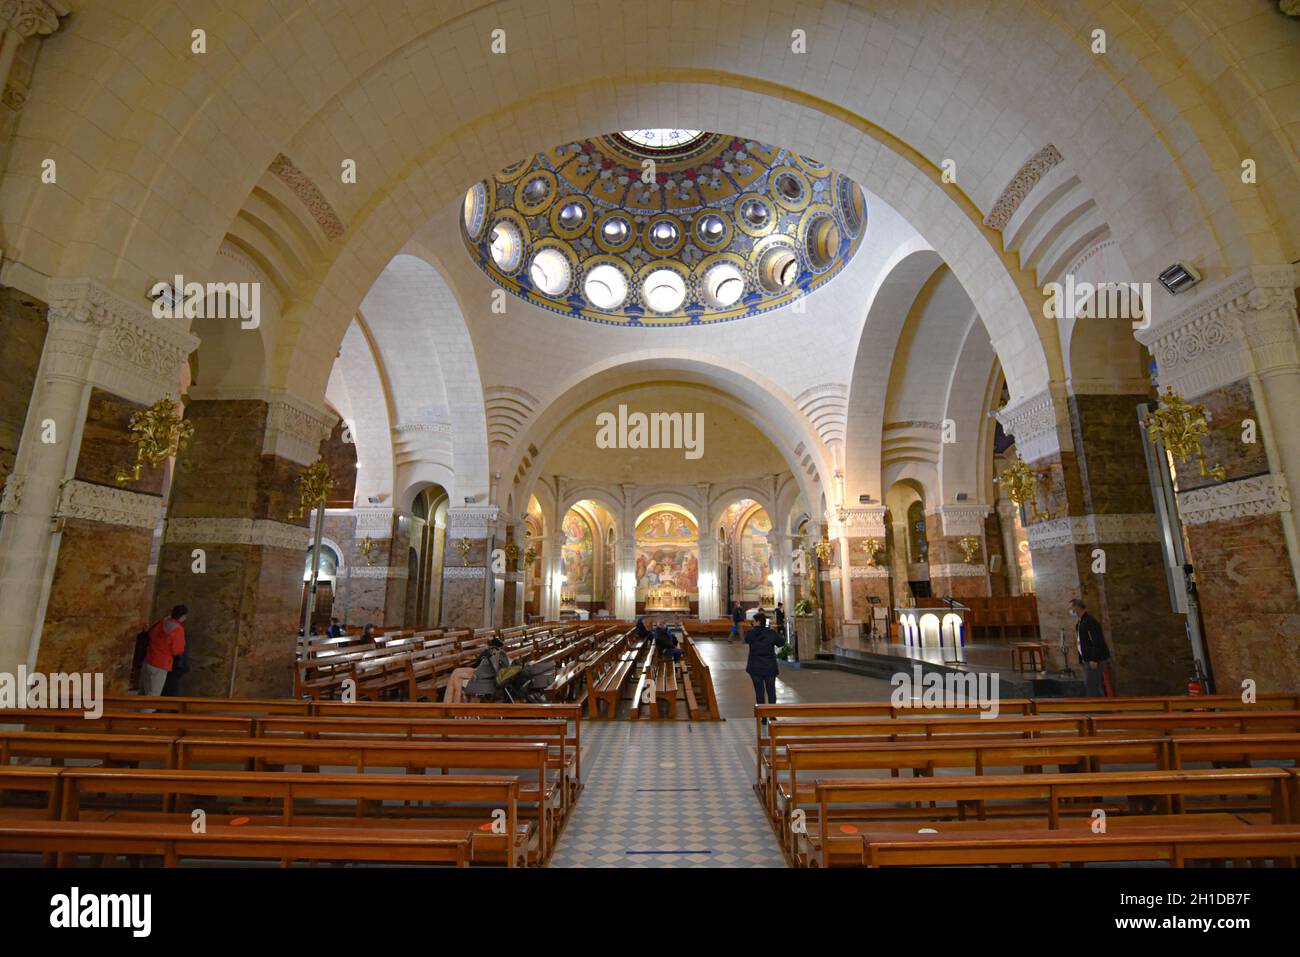 Lourdes, Francia - 9 de octubre de 2021: Vistas interiores del Santuario Basílica de Nuestra Señora de Lourdes Foto de stock